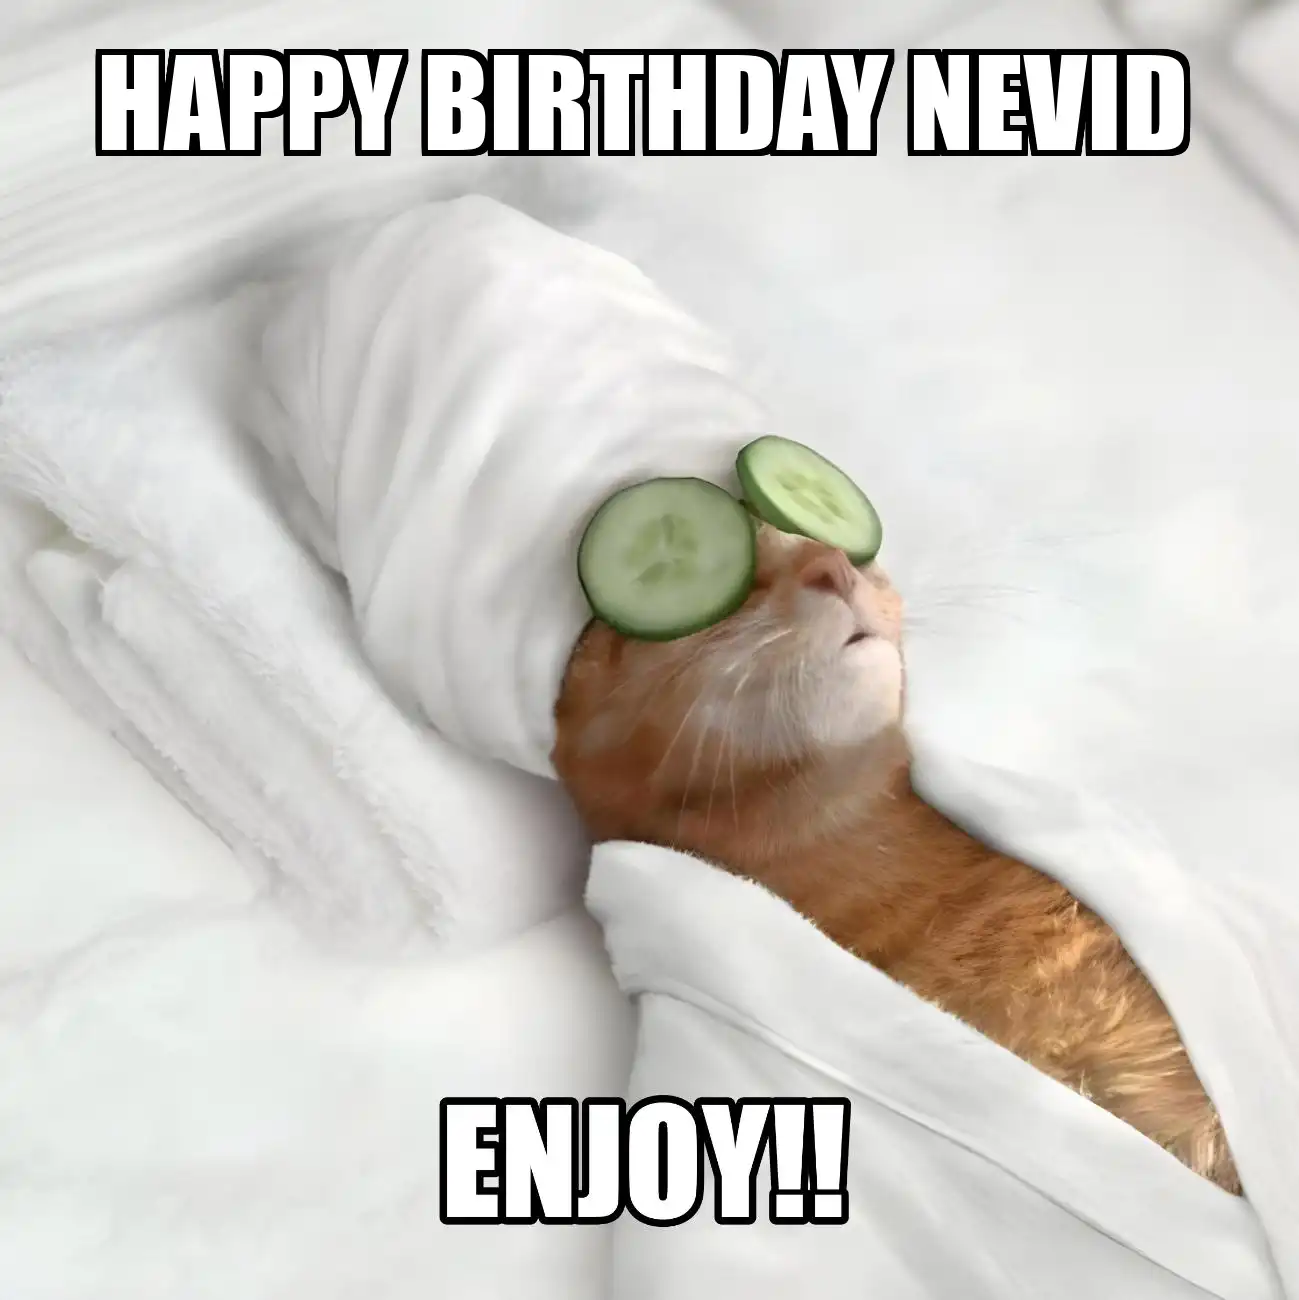 Happy Birthday Nevid Enjoy Cat Meme